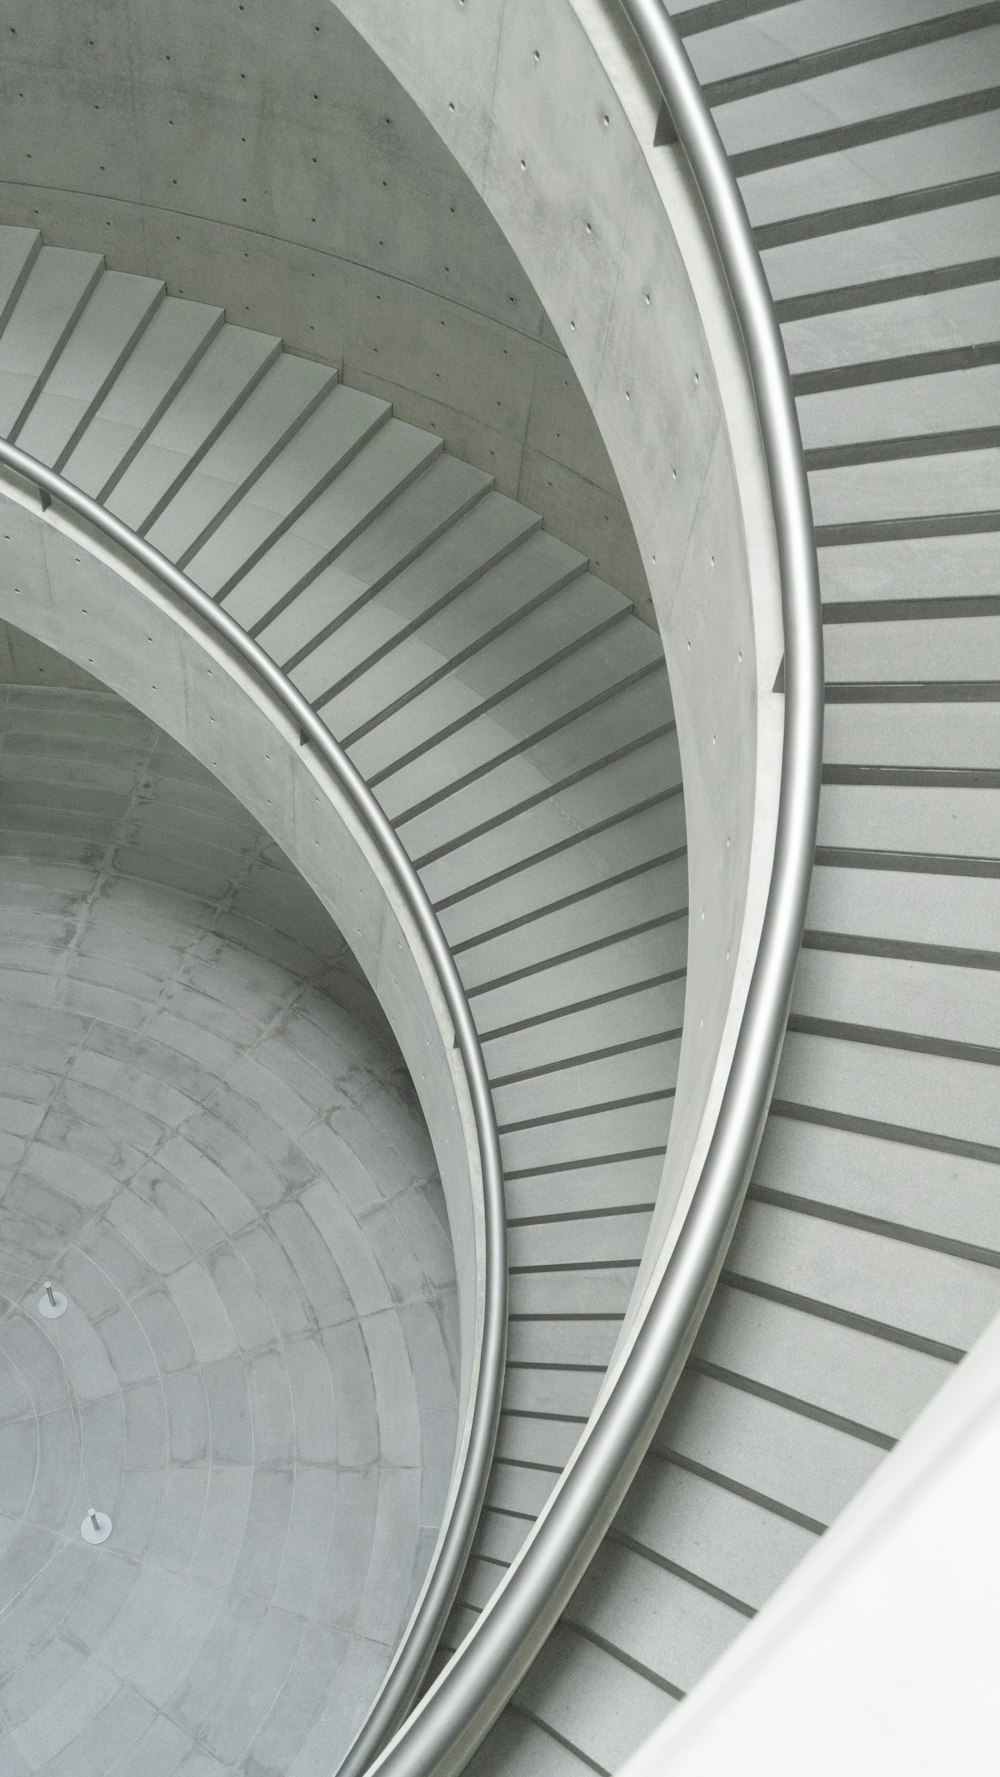 Escalera de caracol blanca en fotografía de primer plano